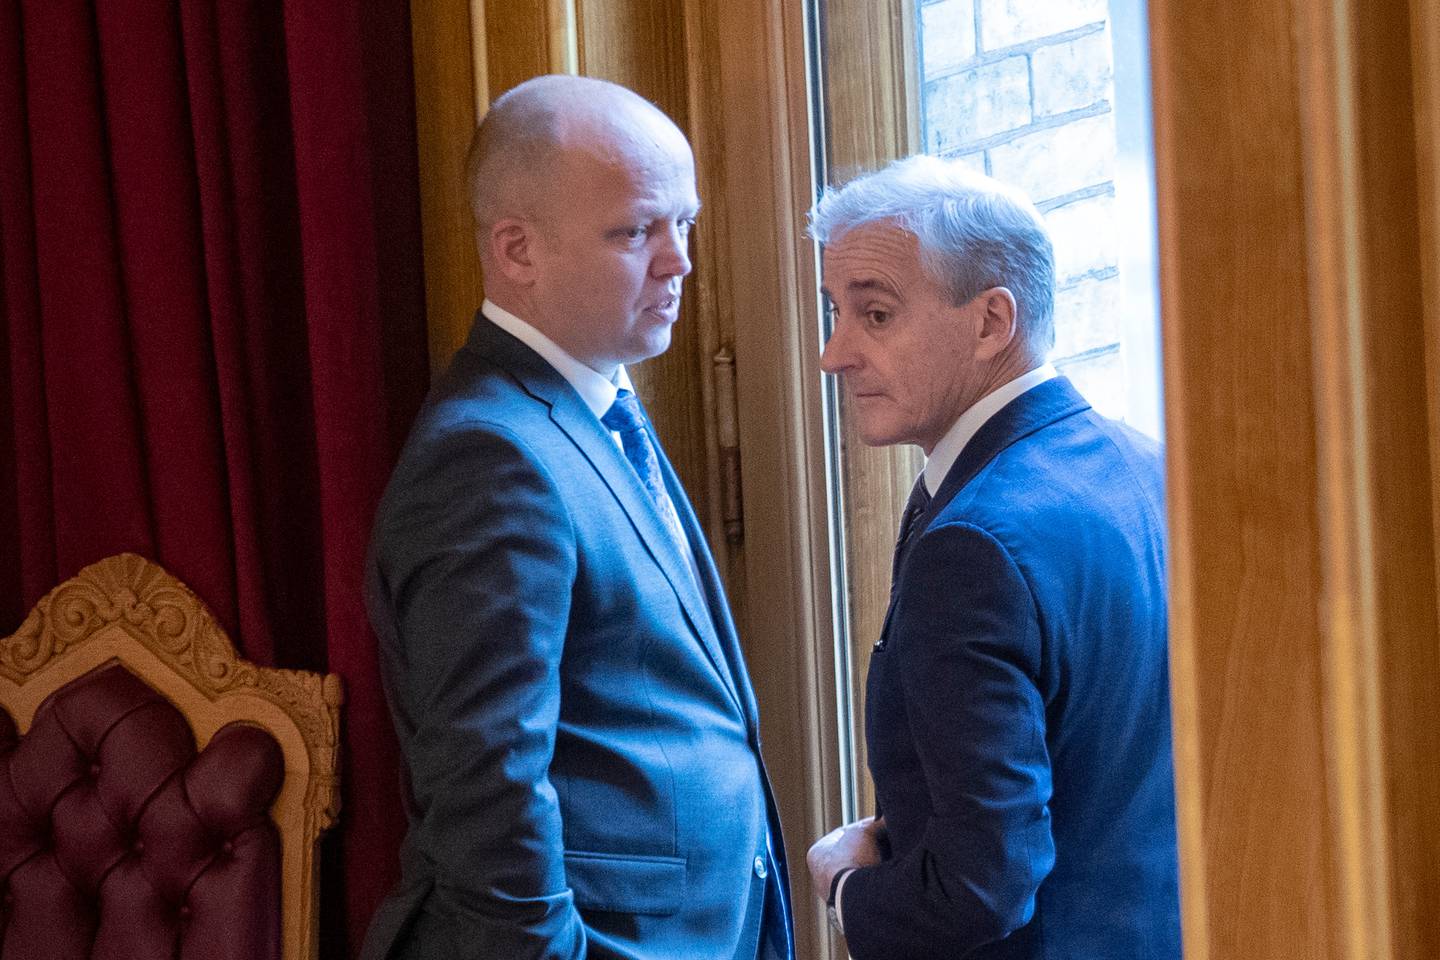 Statsminister Jonas Gahr Støre (Ap) og finansminister Trygve Slagsvold Vedum (Sp).
Foto: Javad Parsa / NTB